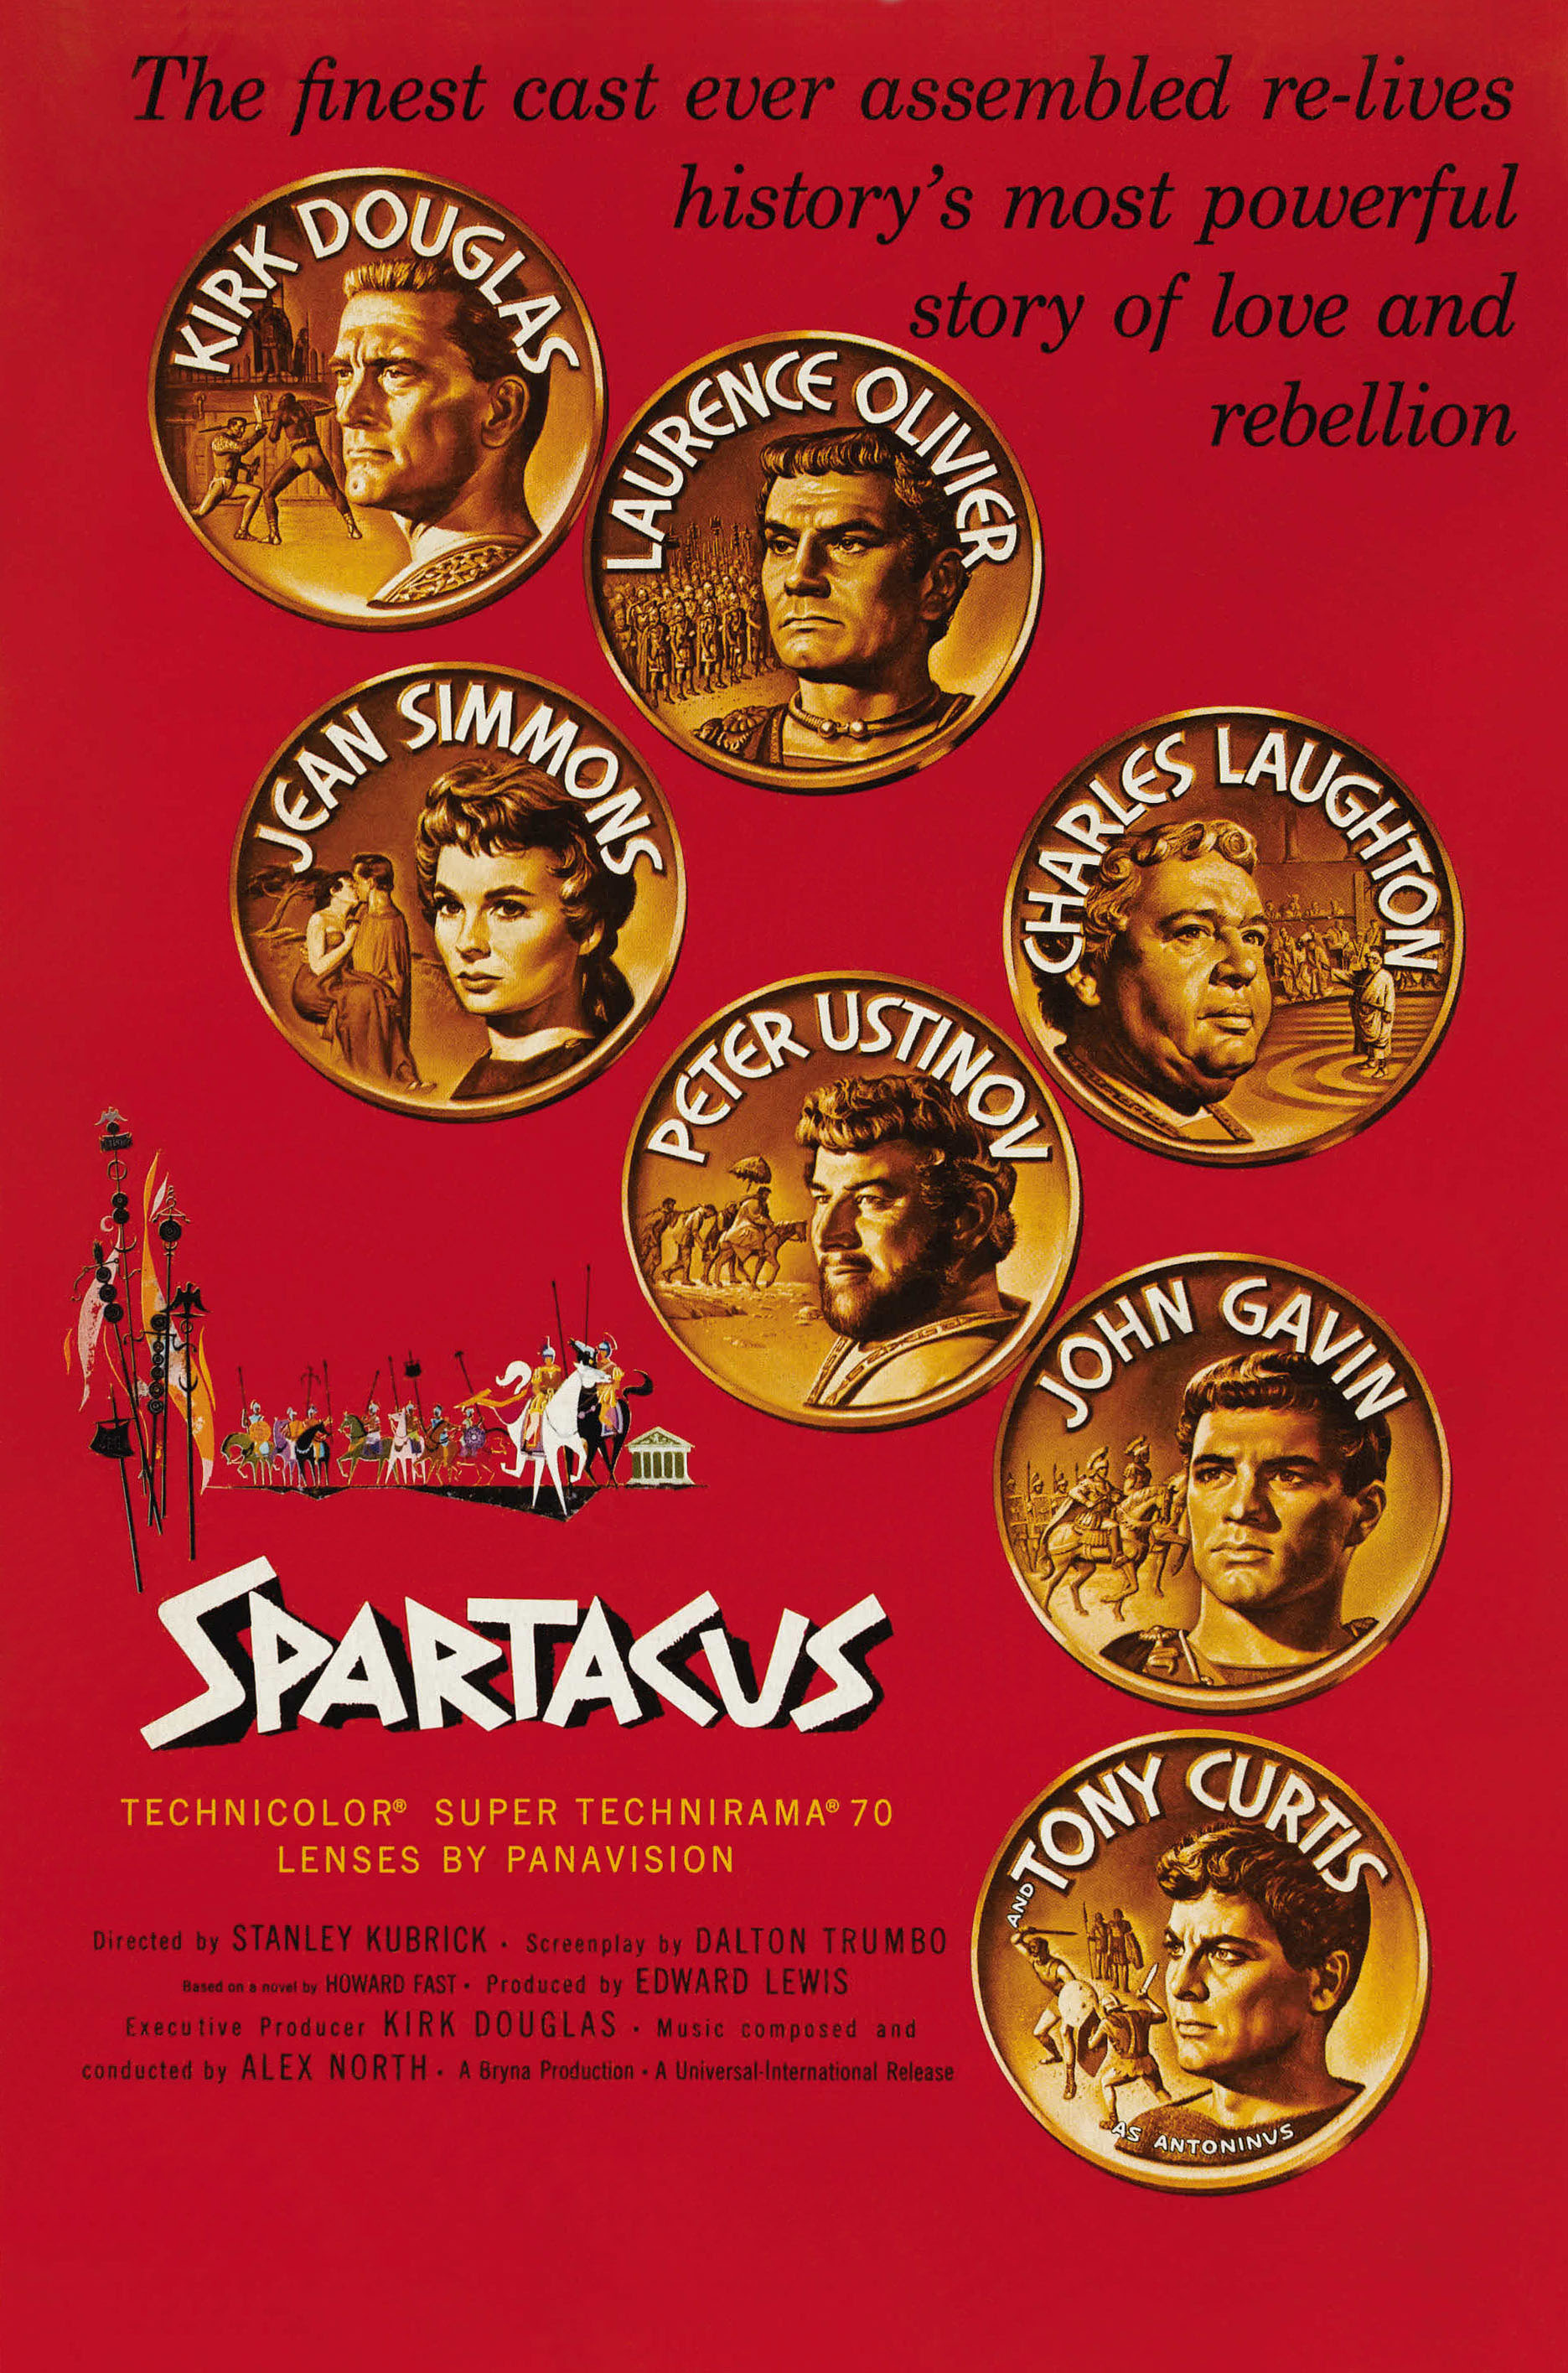 Nonton film Spartacus layarkaca21 indoxx1 ganool online streaming terbaru